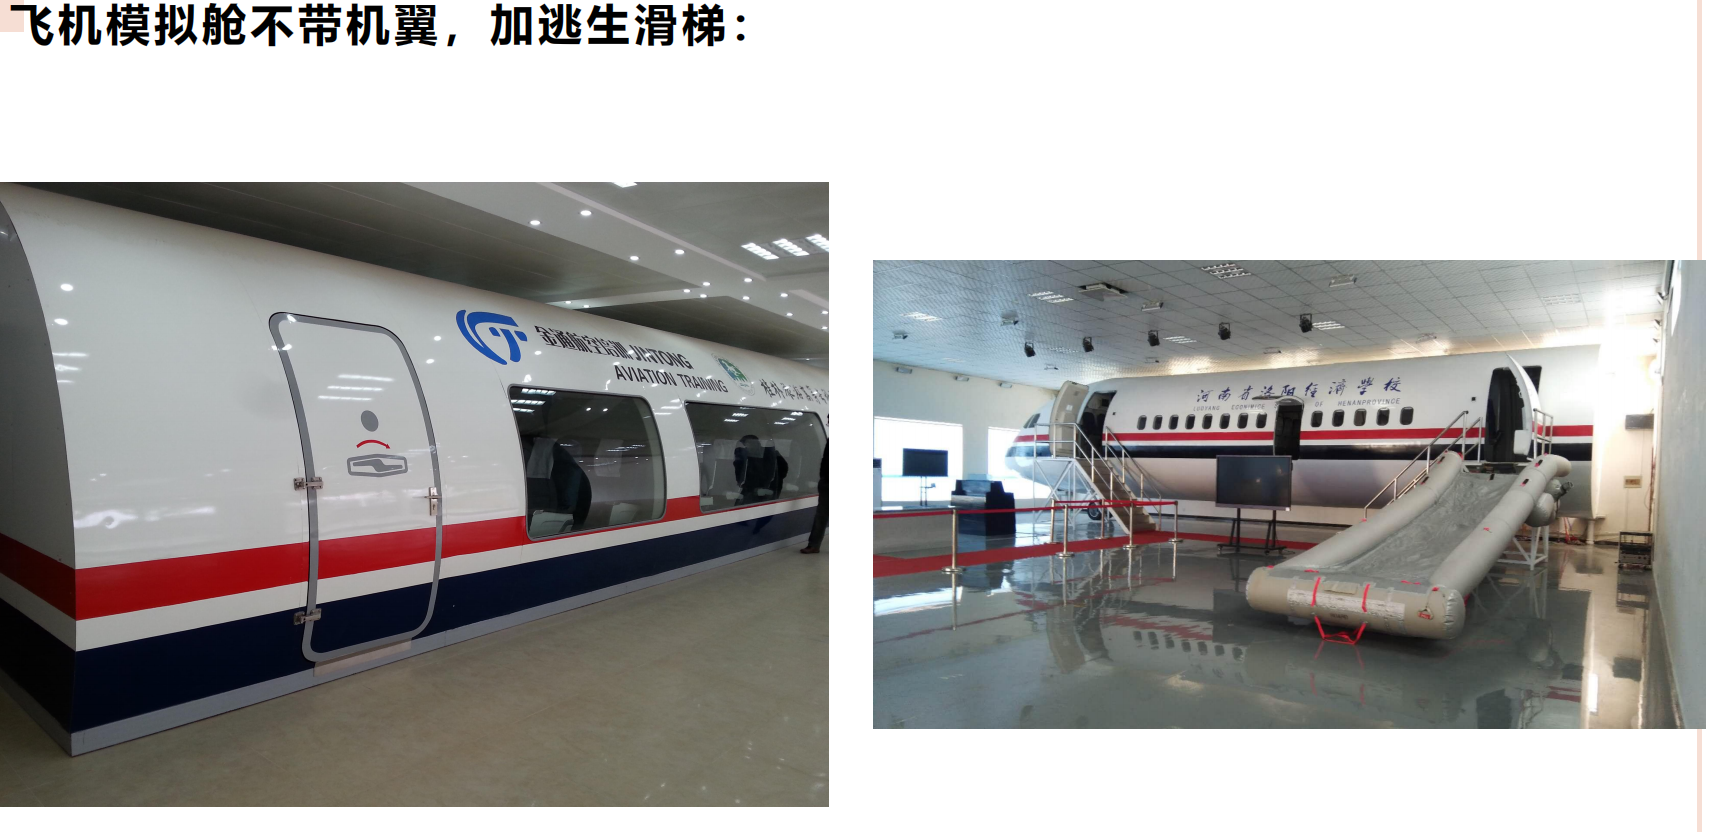 仙桃高铁培训模型出售飞机模拟舱